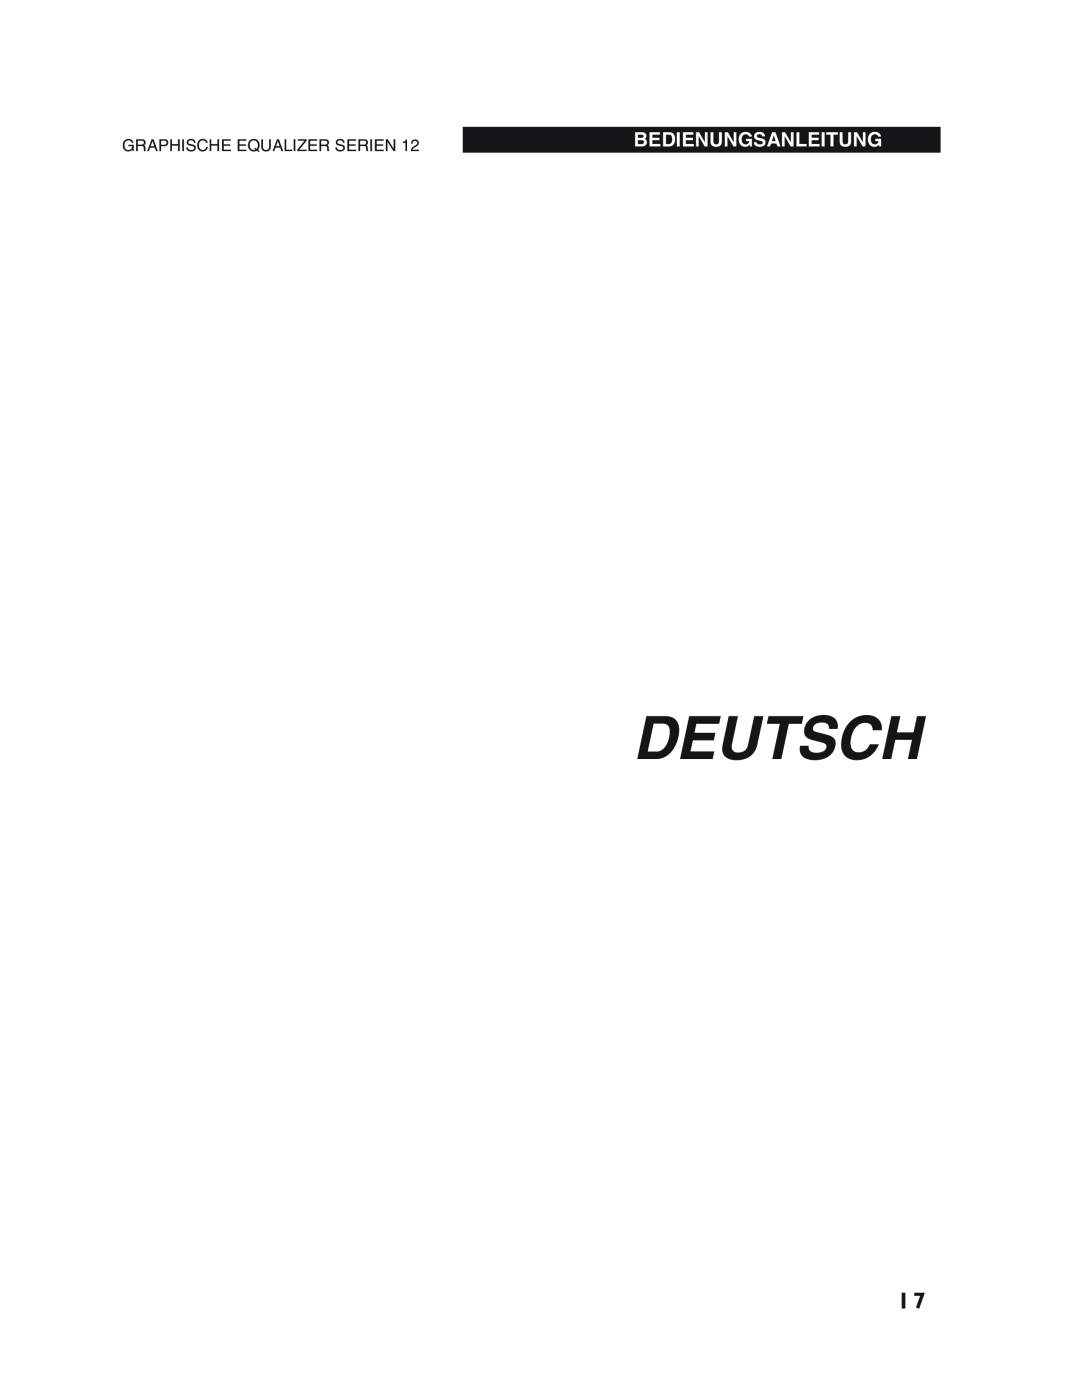 dbx Pro 12 Series operation manual Deutsch, Bedienungsanleitung, Graphische Equalizer Serien 